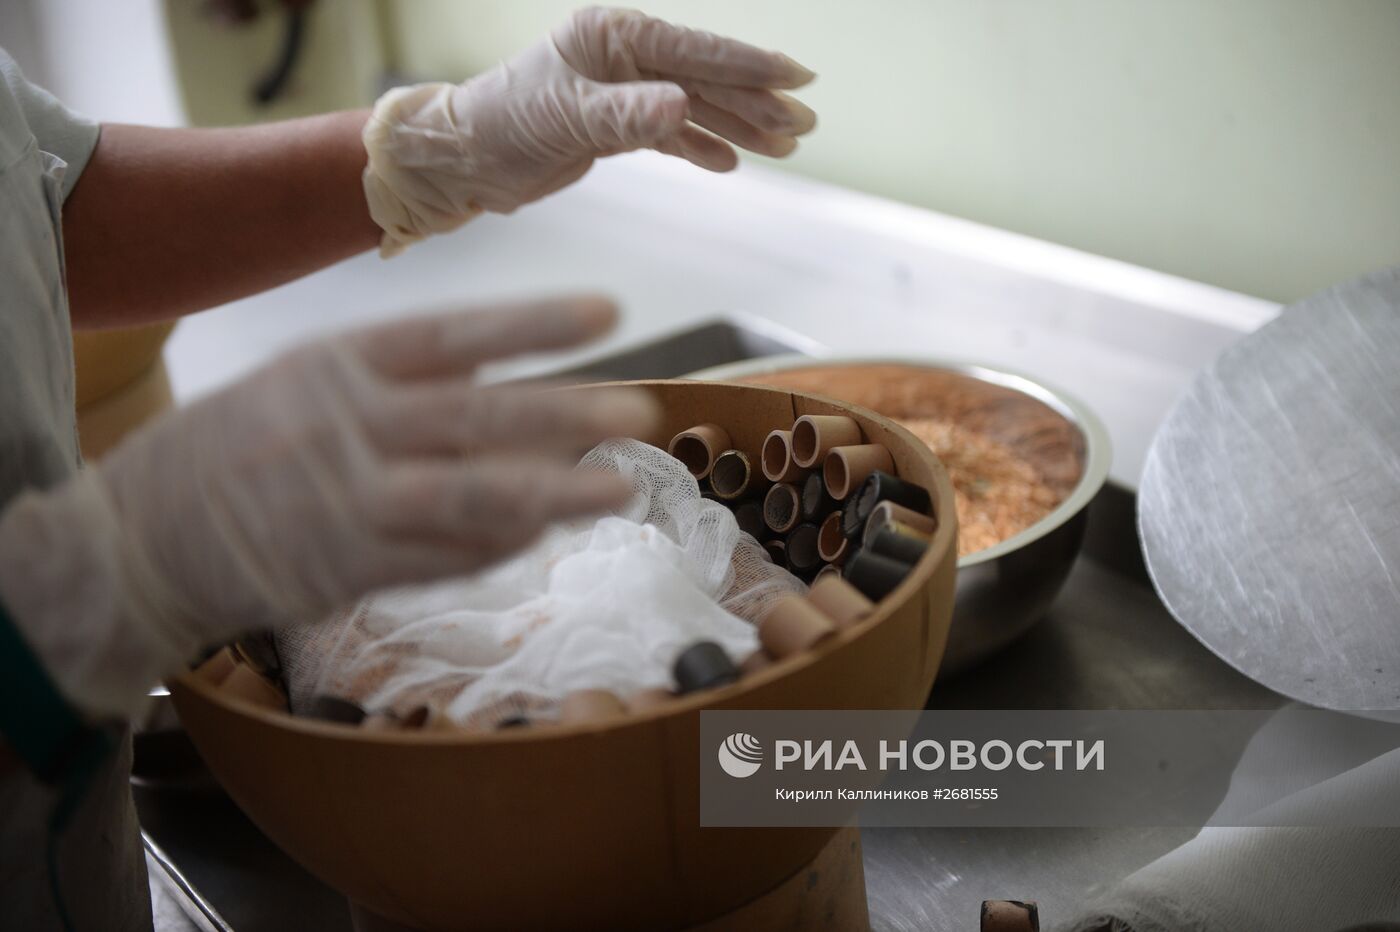 Производство пиротехники в Московской области